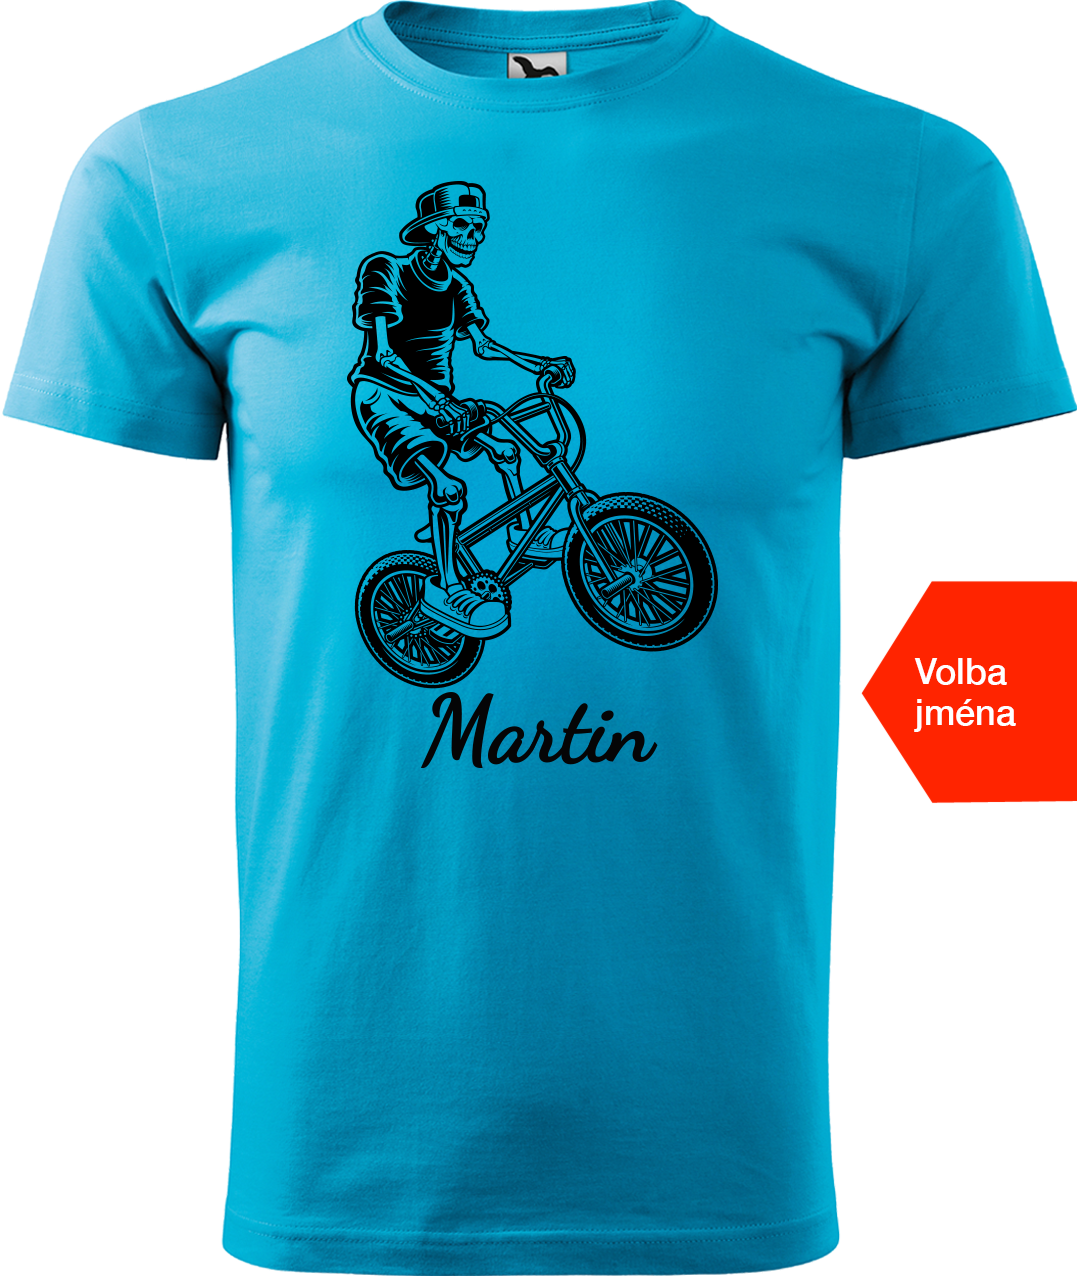 Pánské tričko s kolem a jménem - Trial Bike Velikost: L, Barva: Tyrkysová (44)